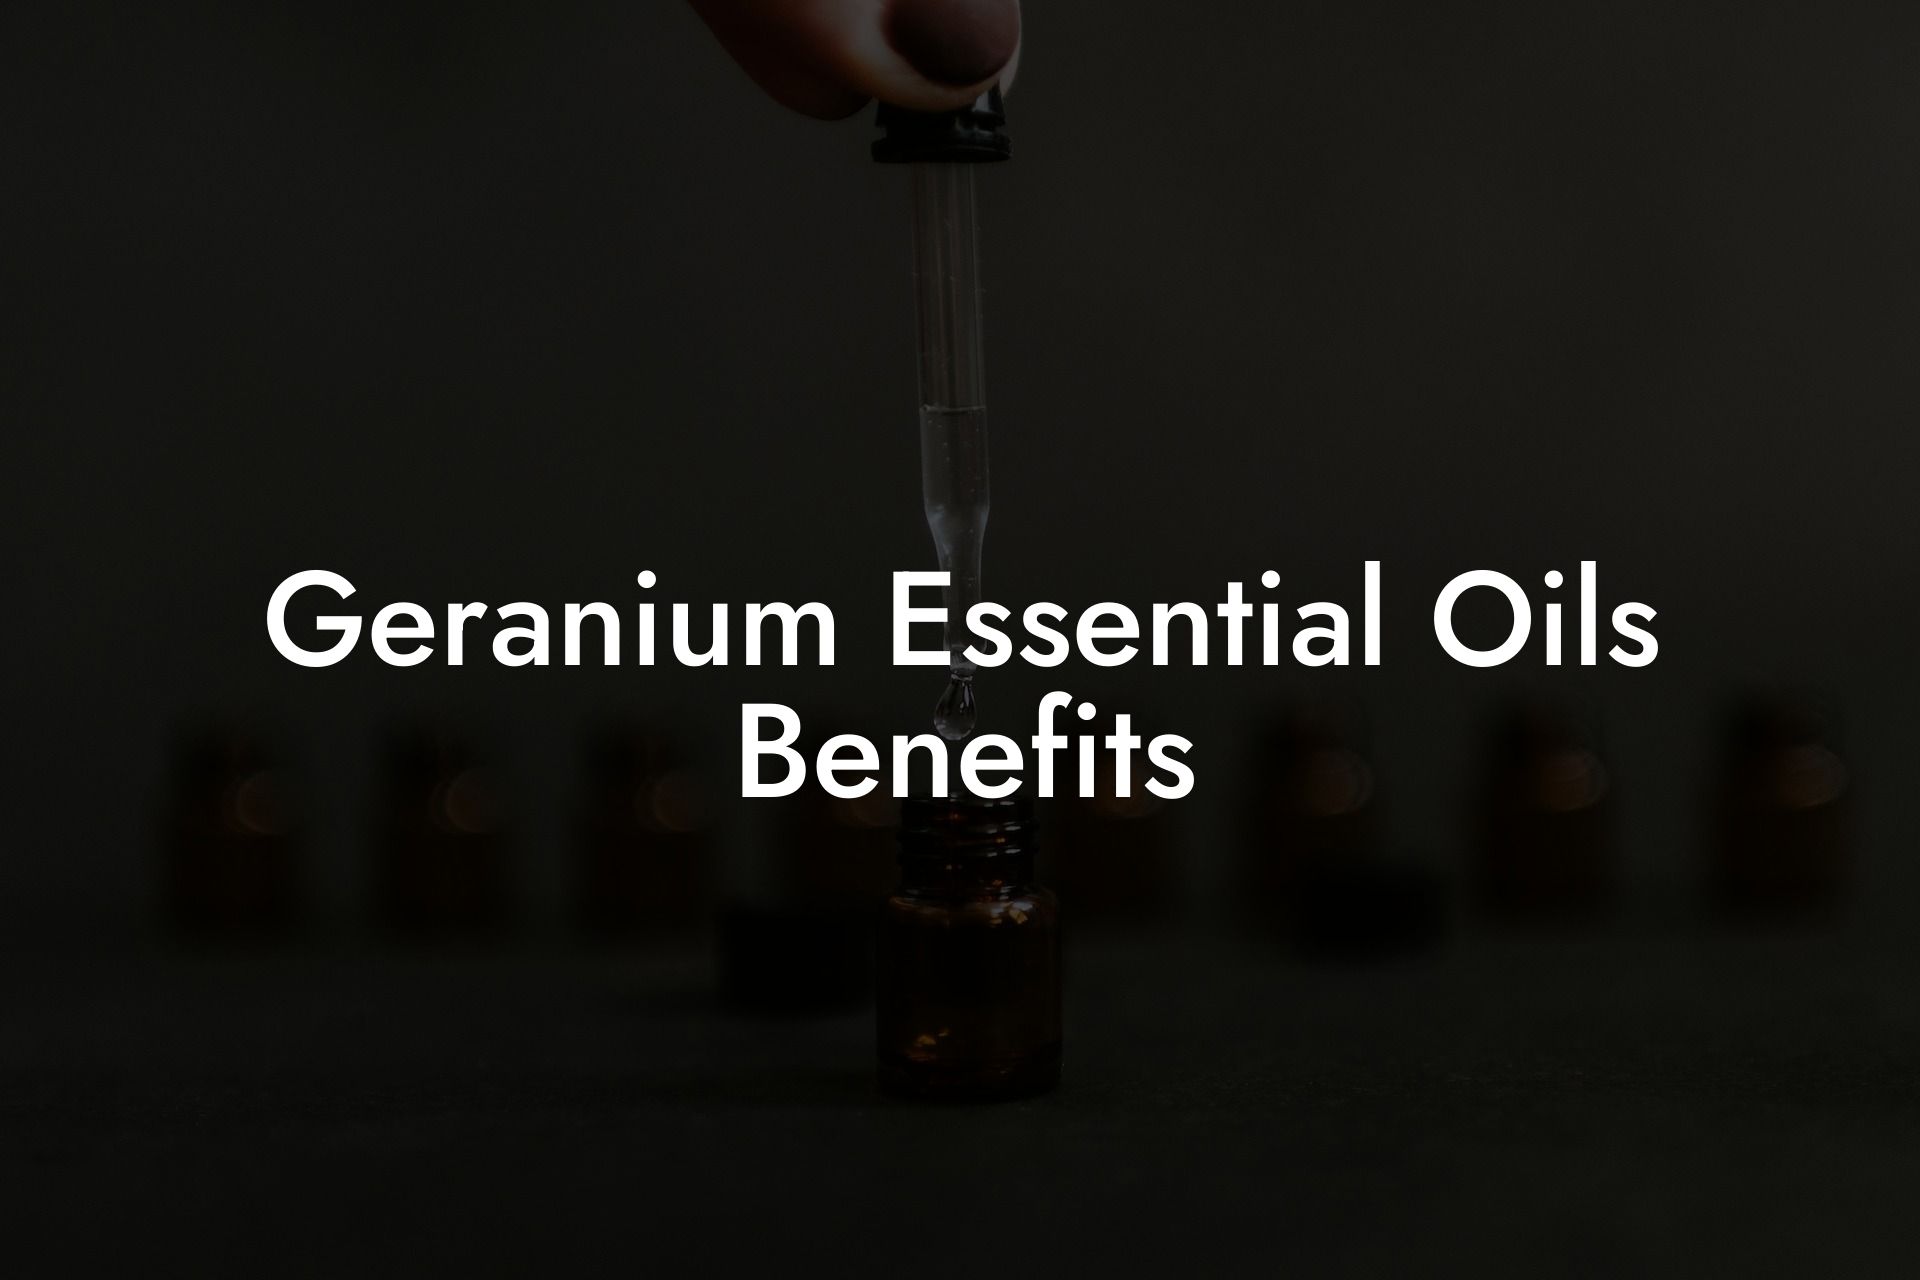 Geranium Essential Oils Benefits